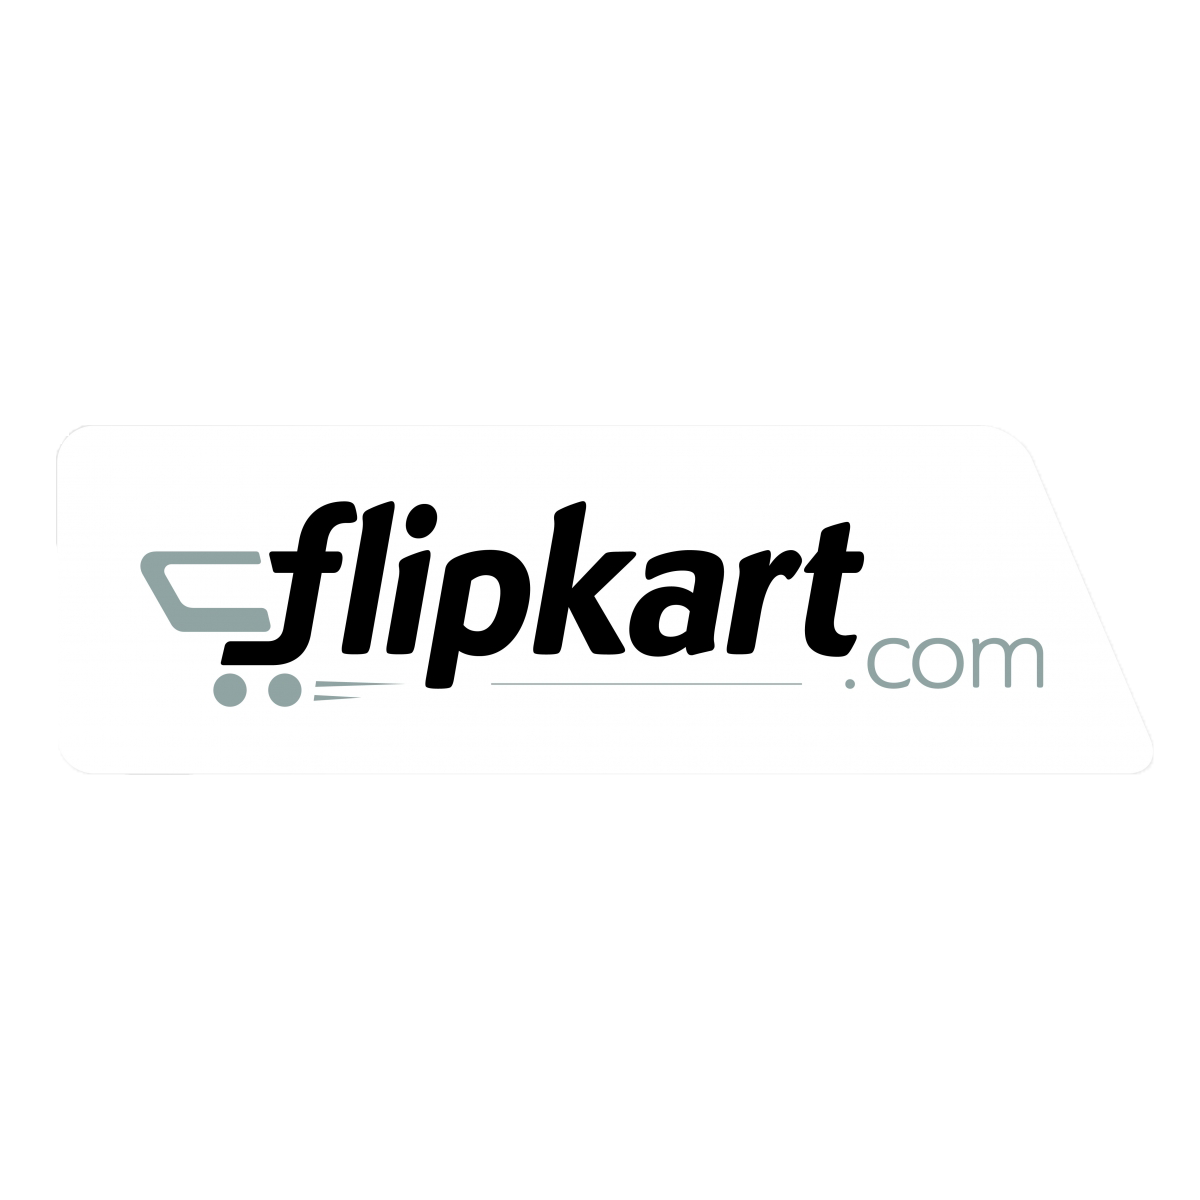 Flipkart Transparent Gallery